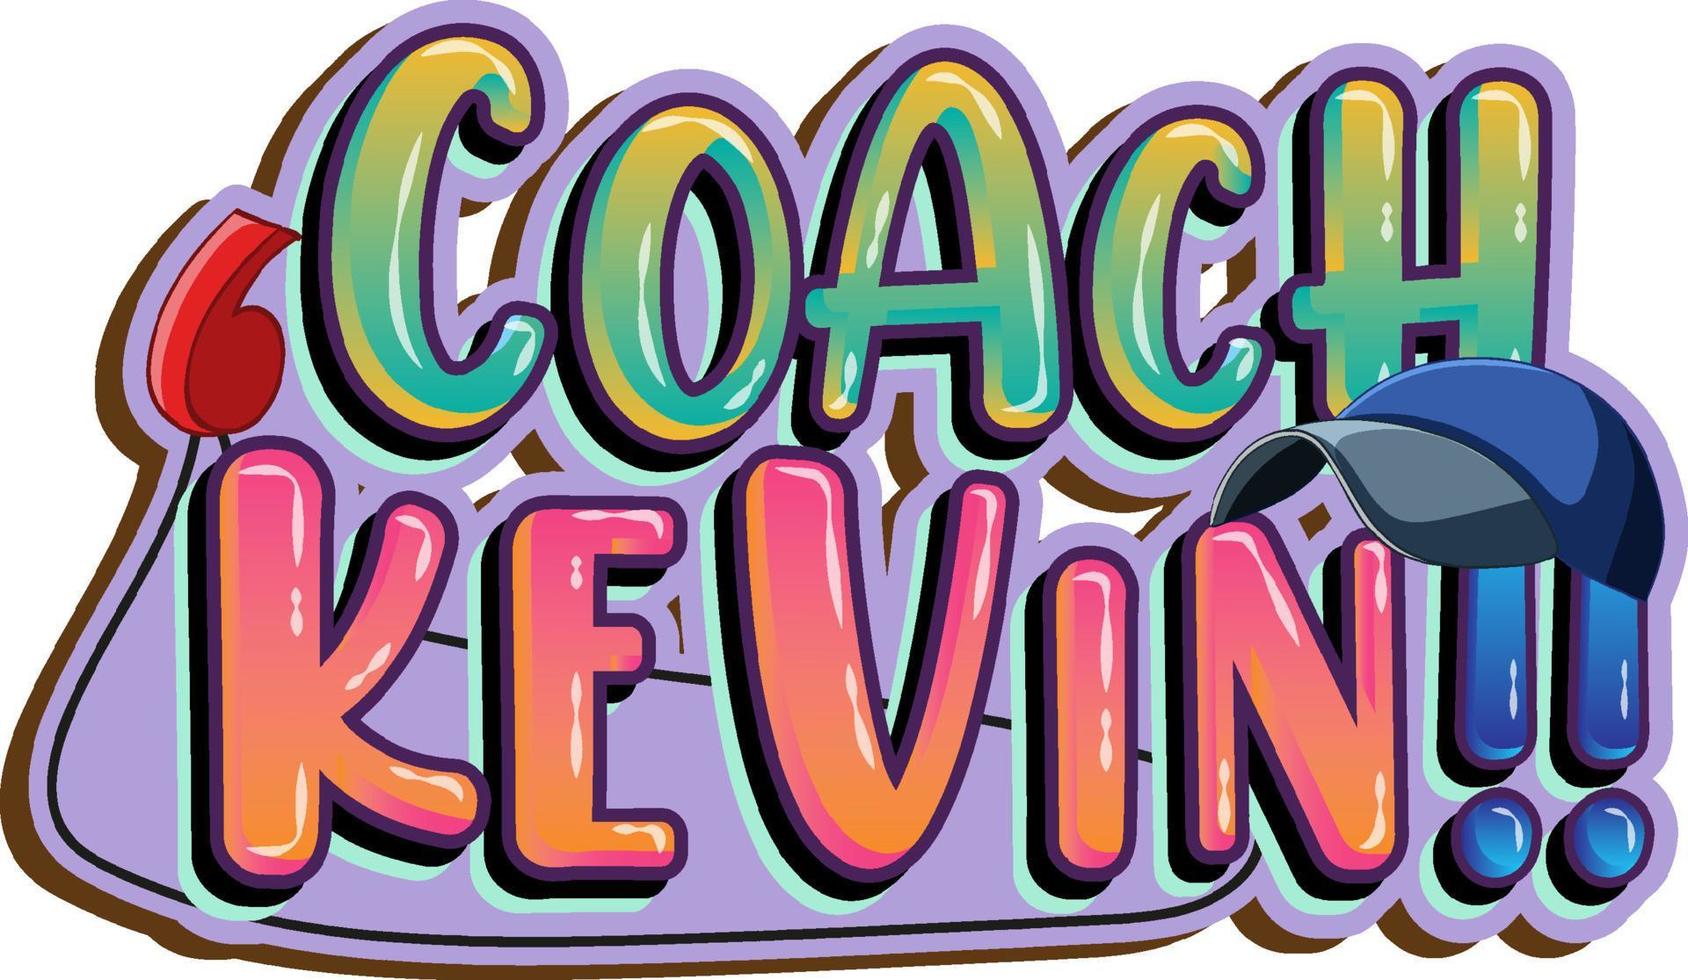 Coach Kevin Logo Textdesign vektor